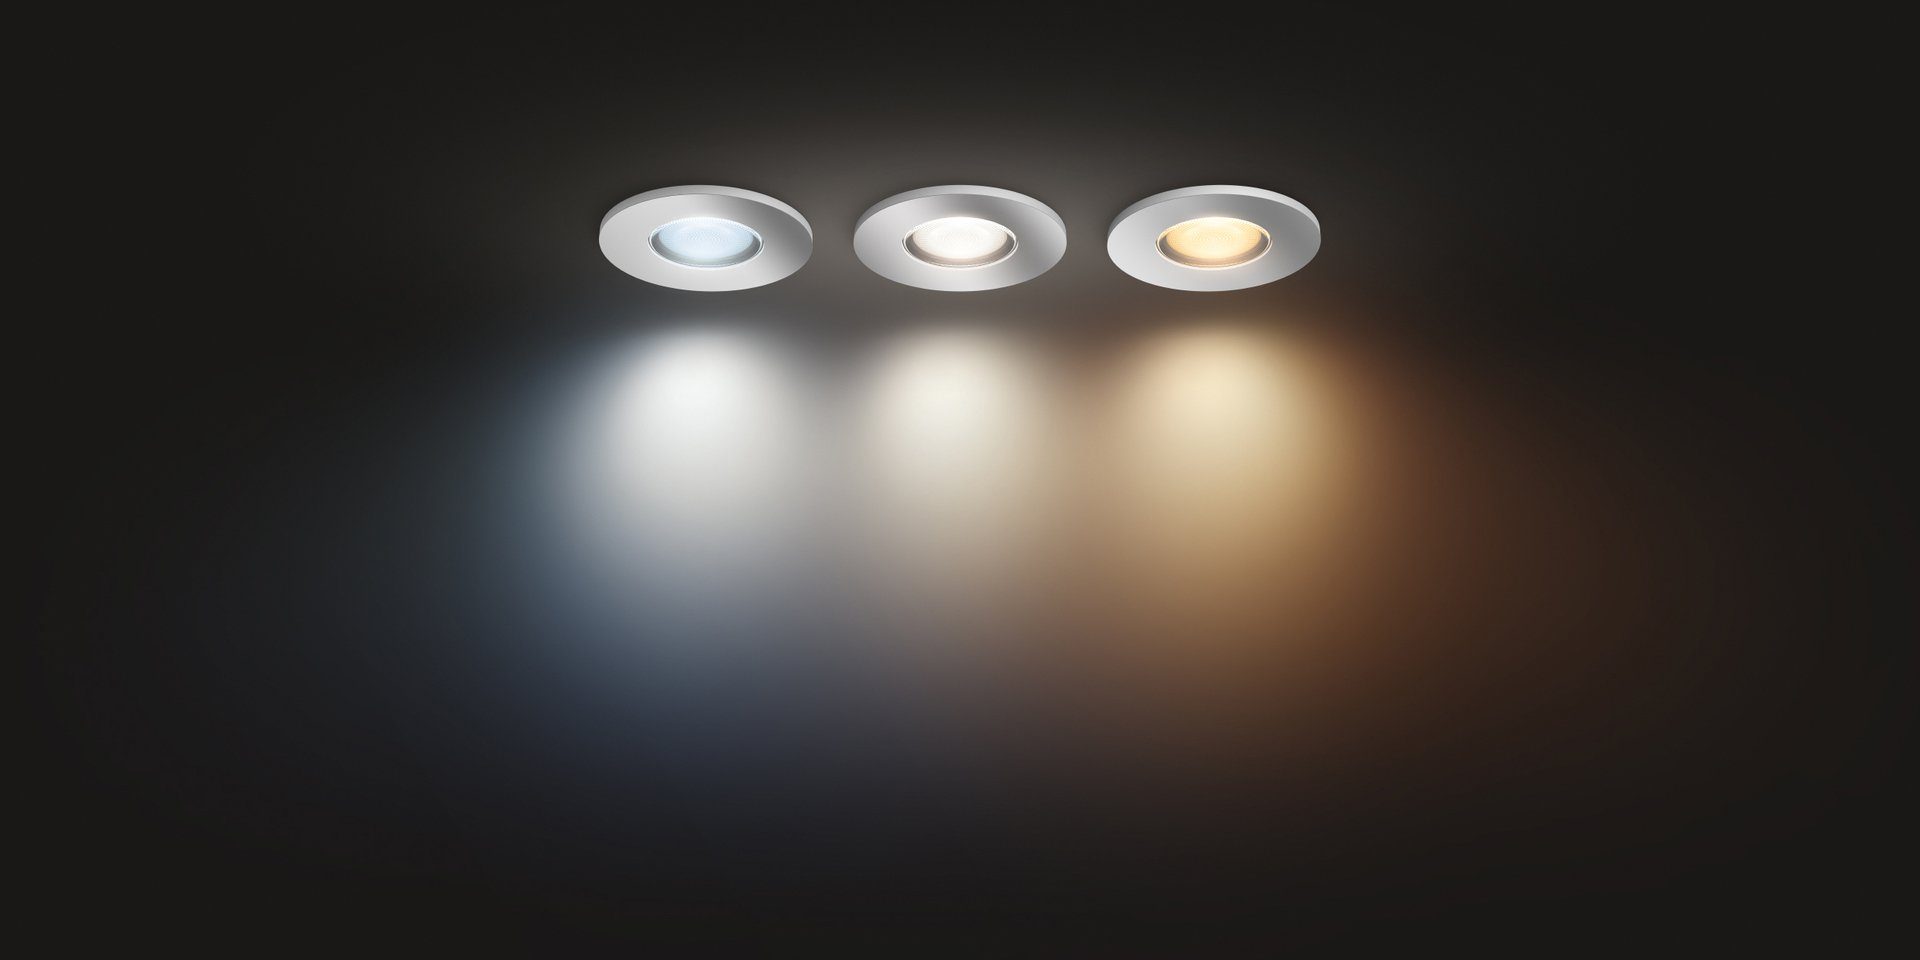 Philips Dimmfunktion, LED Leuchtmittel Hue wechselbar, Flutlichtstrahler Adore, Warmweiß